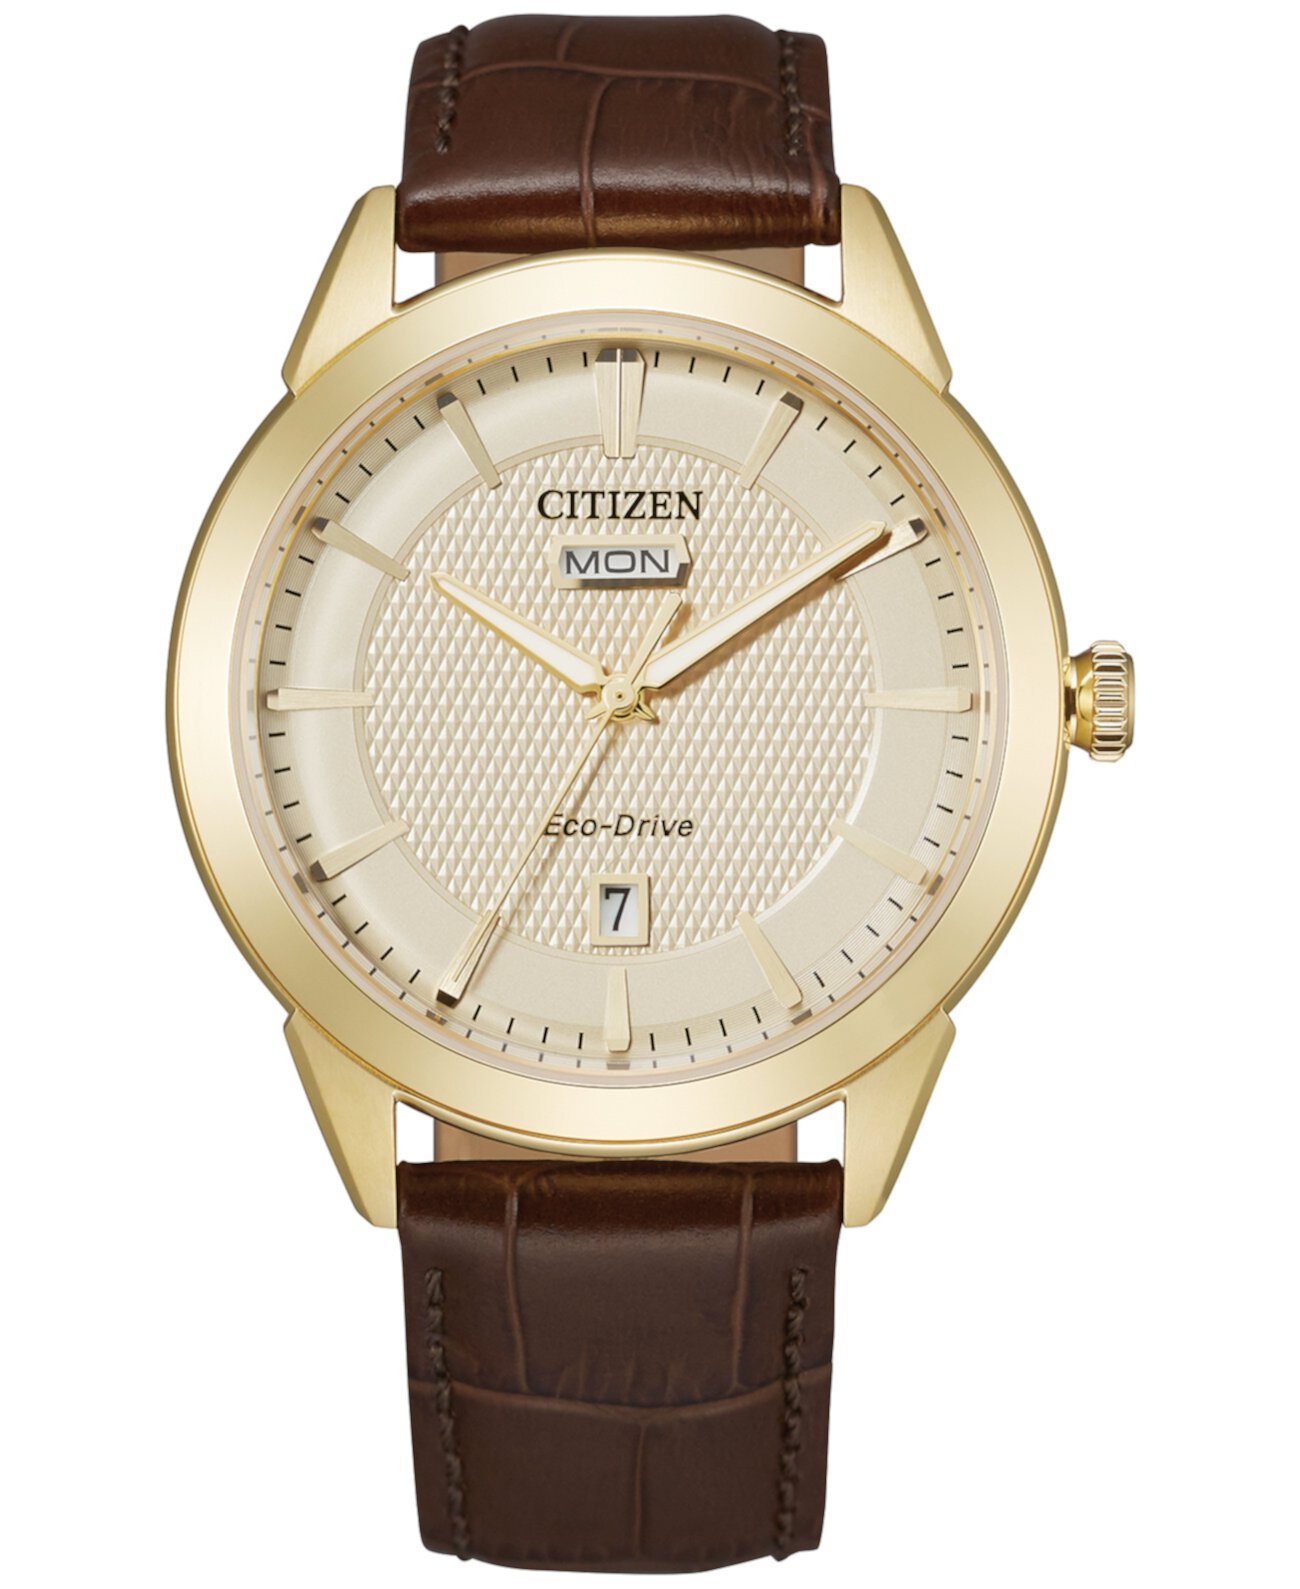 Мужские часы Corso с коричневым кожаным ремешком Eco-Drive 40 мм Citizen